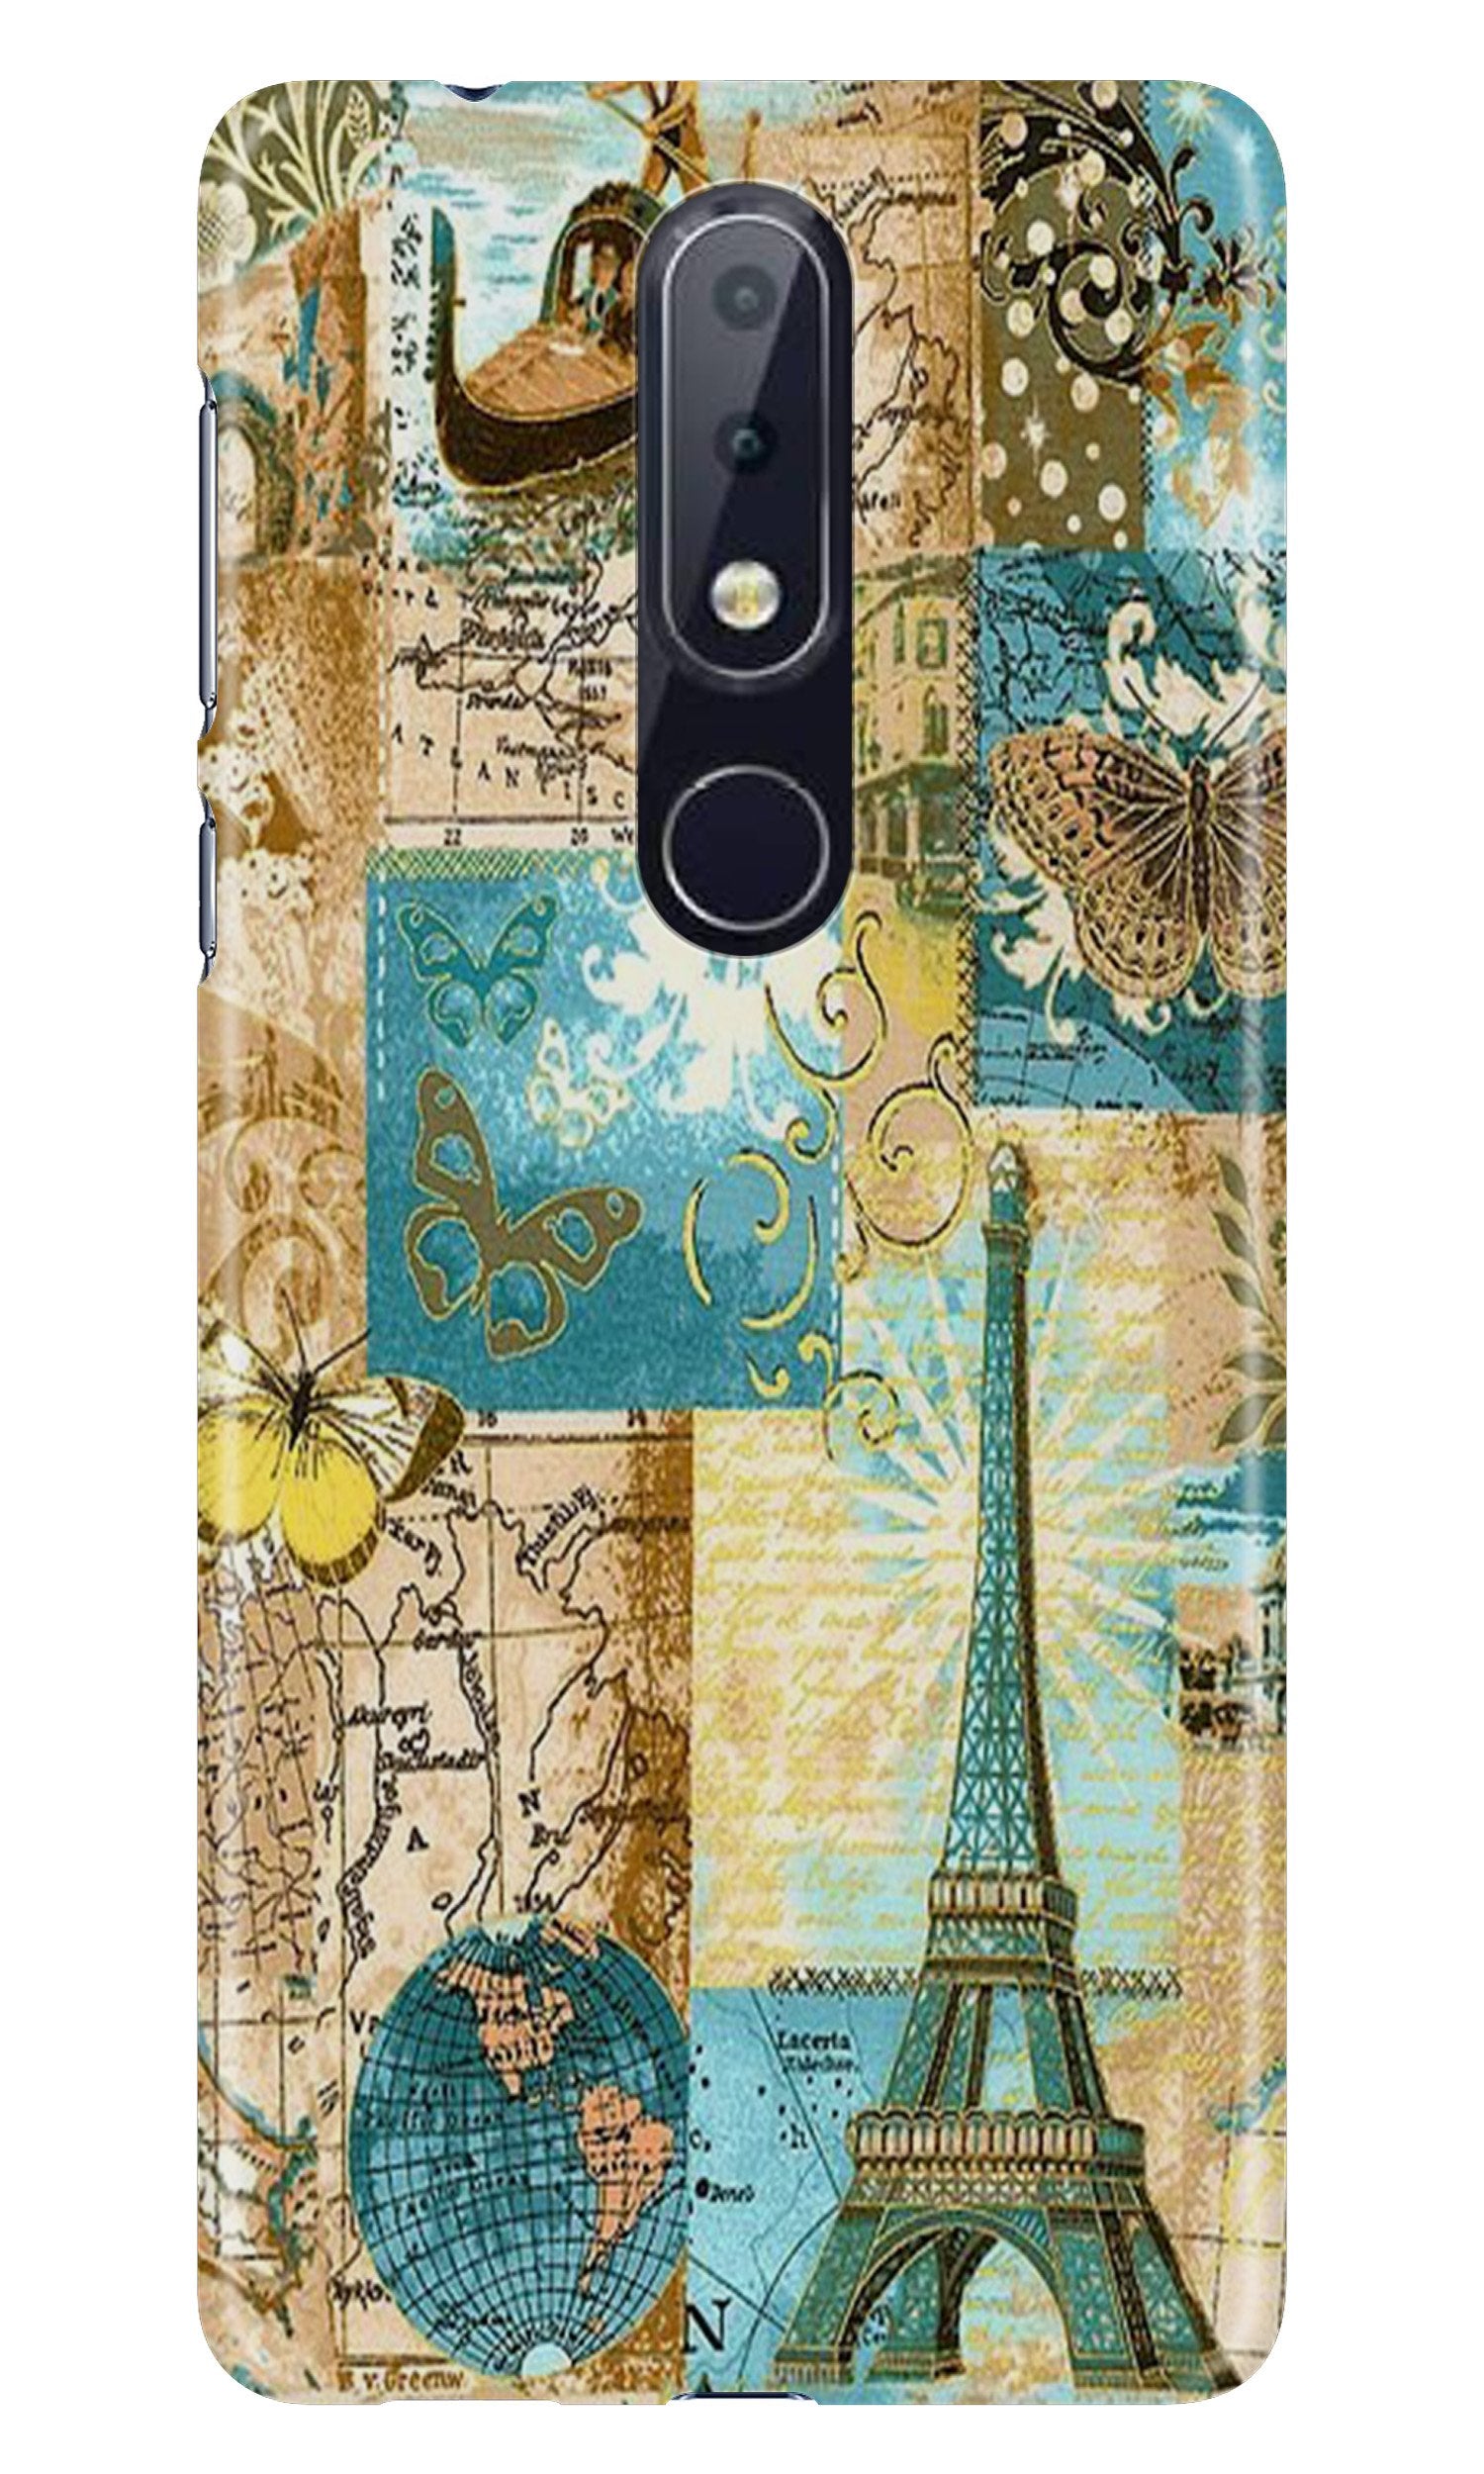 Travel Eiffel TowerCase for Nokia 6.1 Plus (Design No. 206)